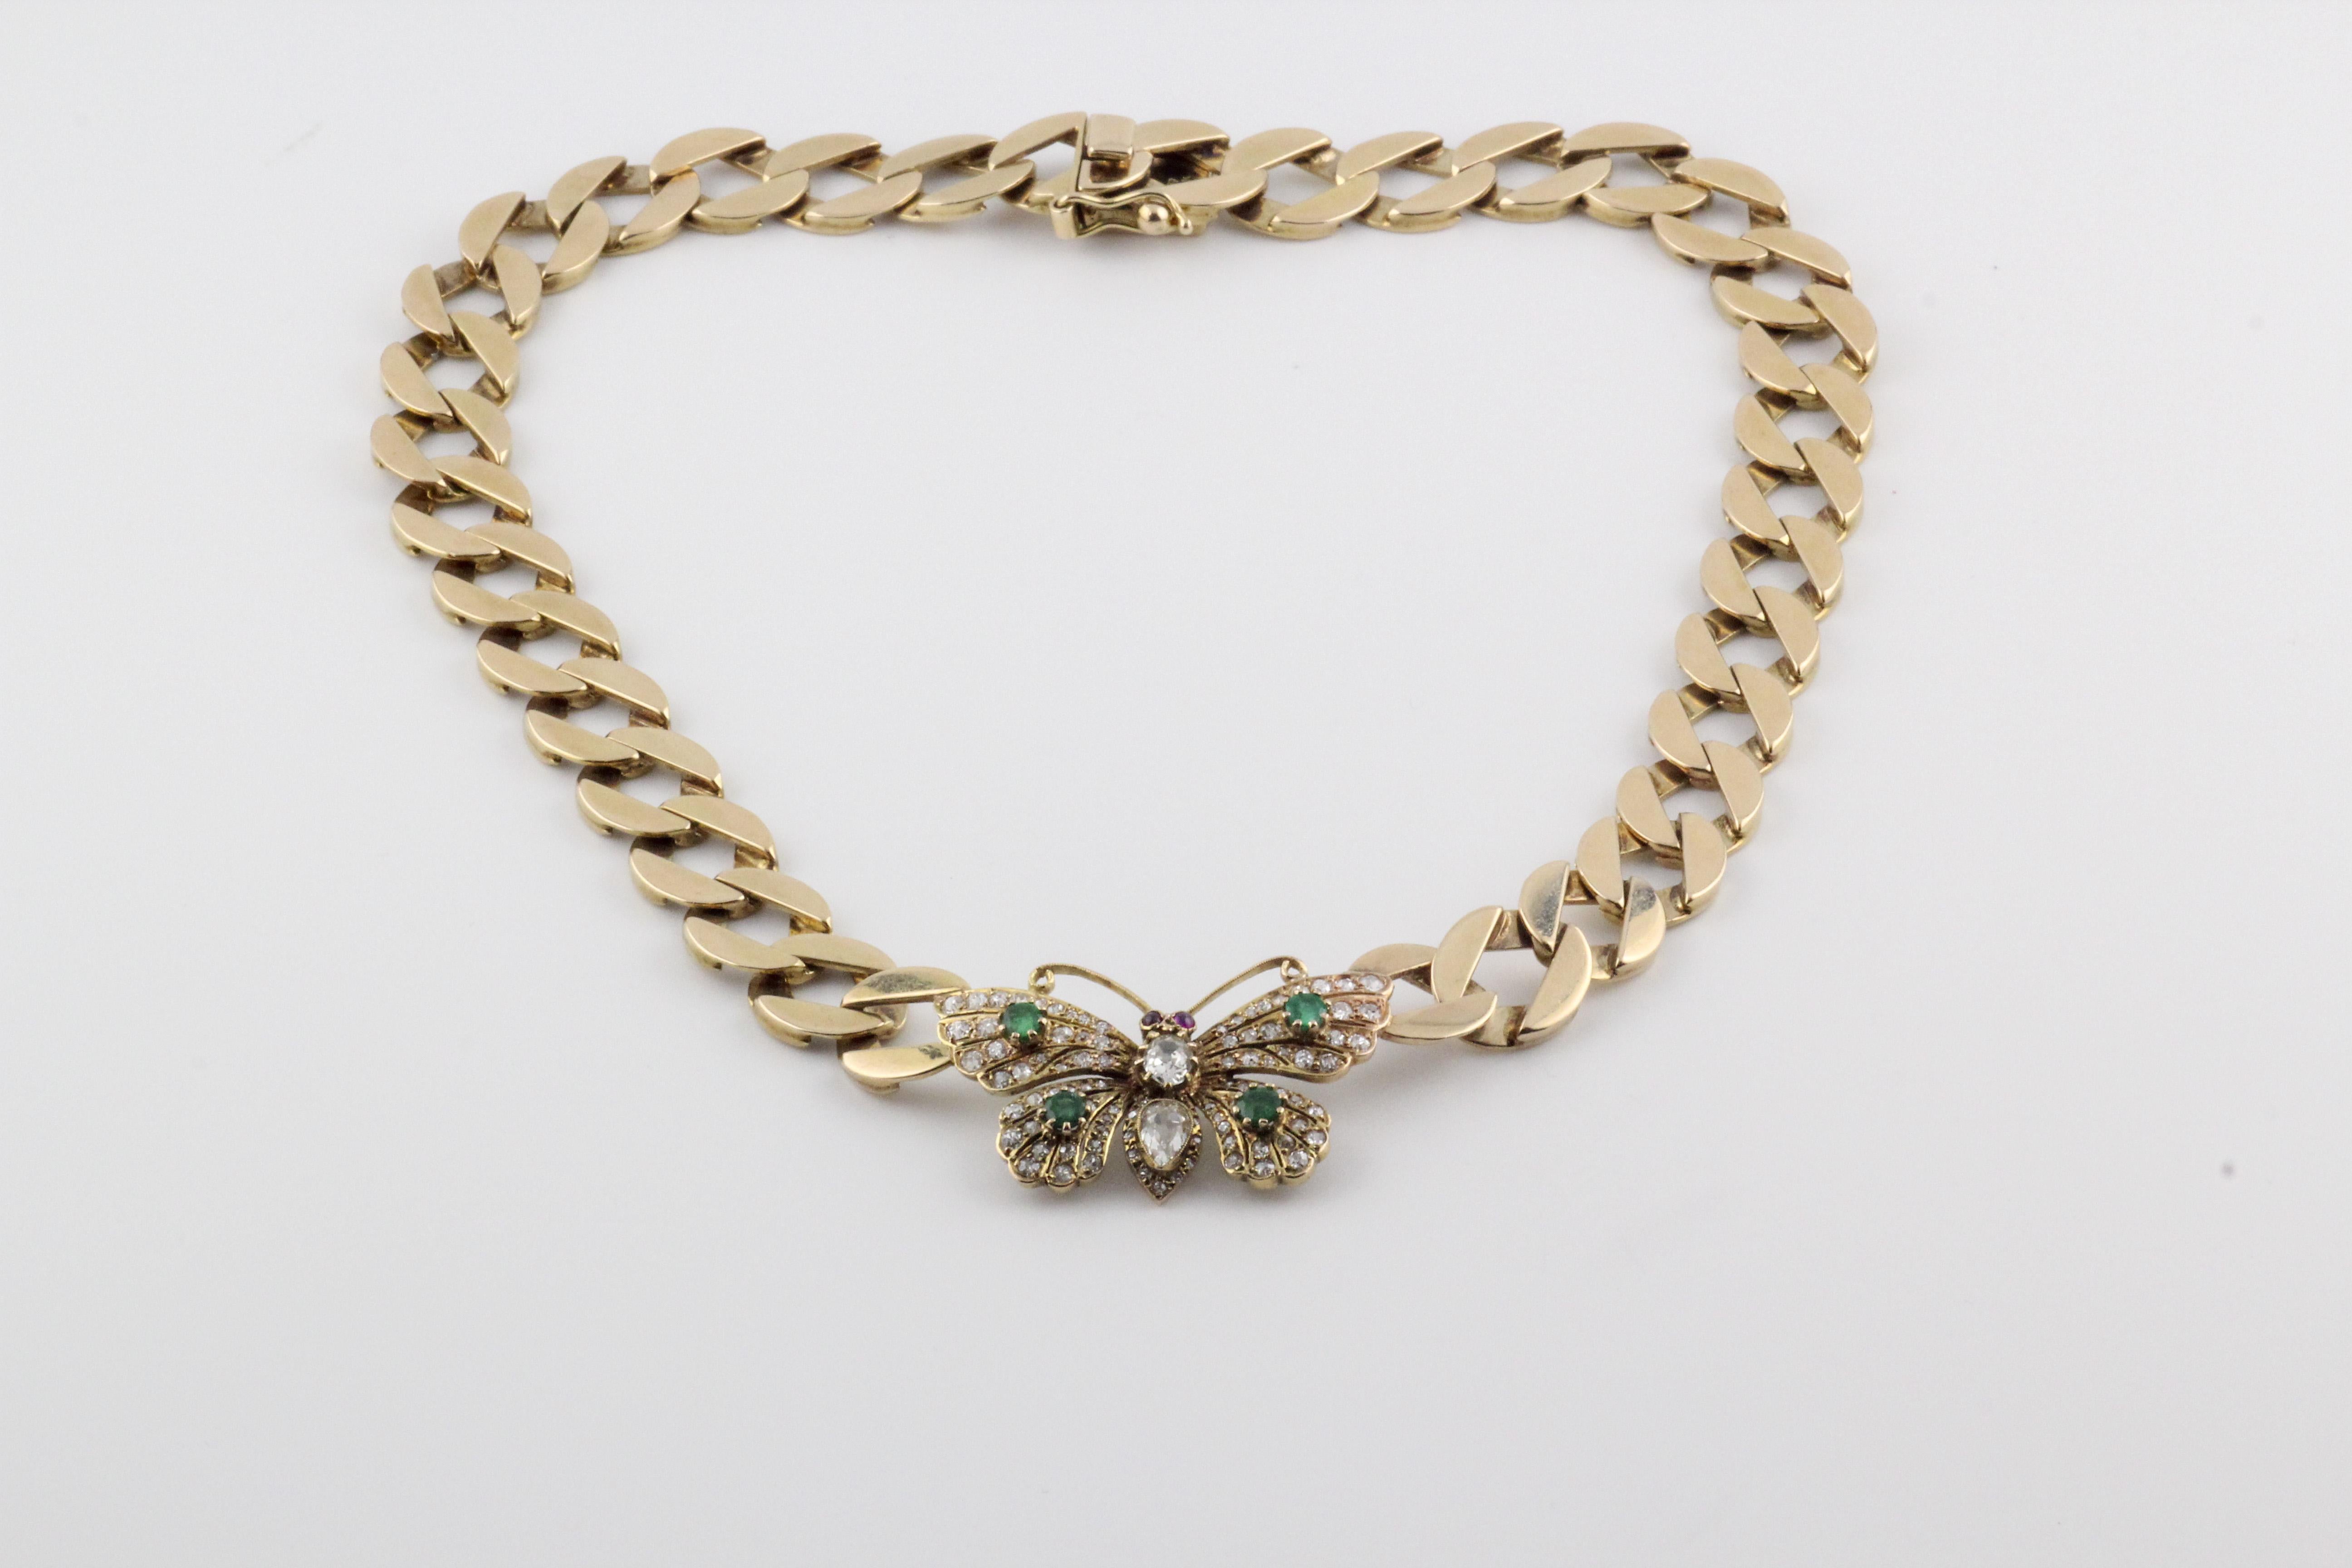 Die Vintage Butterfly Diamant-Rubin- und Smaragd-Halskette aus 14 Karat Gelbgold ist ein einzigartiges und bezauberndes Schmuckstück, das die Schönheit der Natur mit einer exquisiten Mischung aus Edelsteinen und Handwerkskunst einfängt. Diese